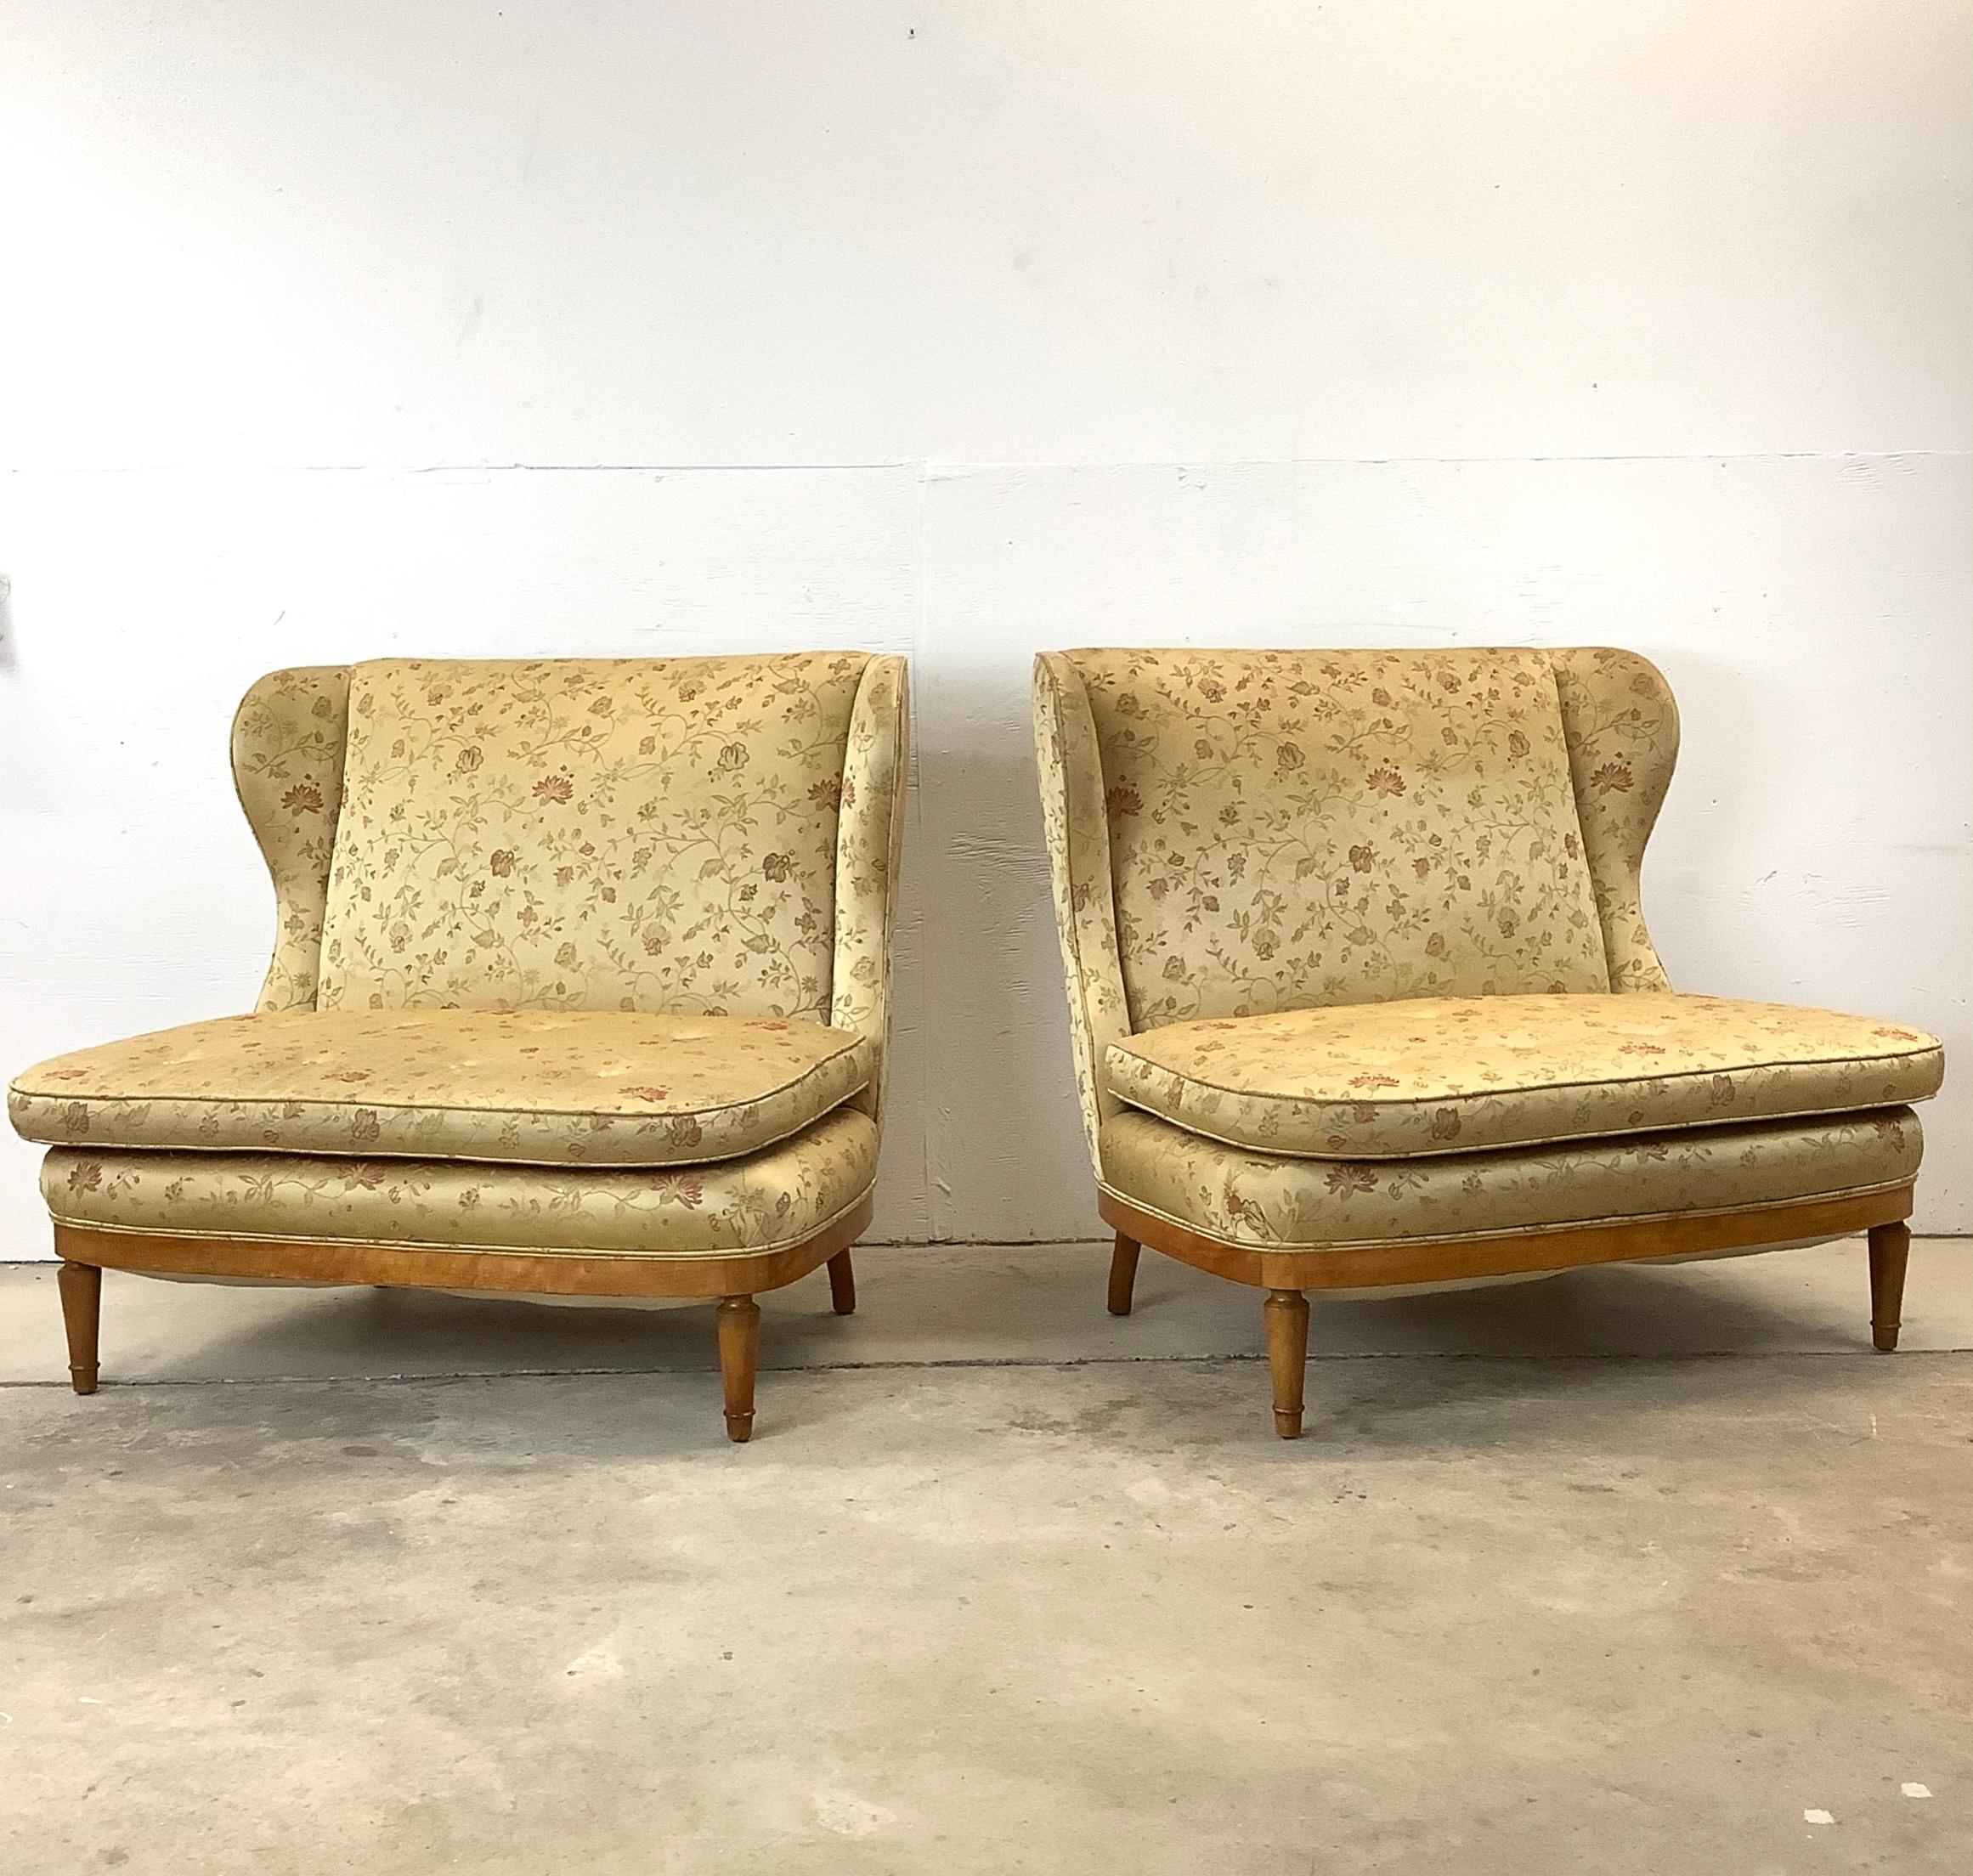 Entdecken Sie den Reiz der Eleganz der Mitte des Jahrhunderts mit diesem Paar Vintage-Liegesessel, die an die exquisiten Entwürfe von Paolo Buffa erinnern. Diese Sessel sind eine wunderbare Synthese aus klassischem italienischem Flair und zeitlosem